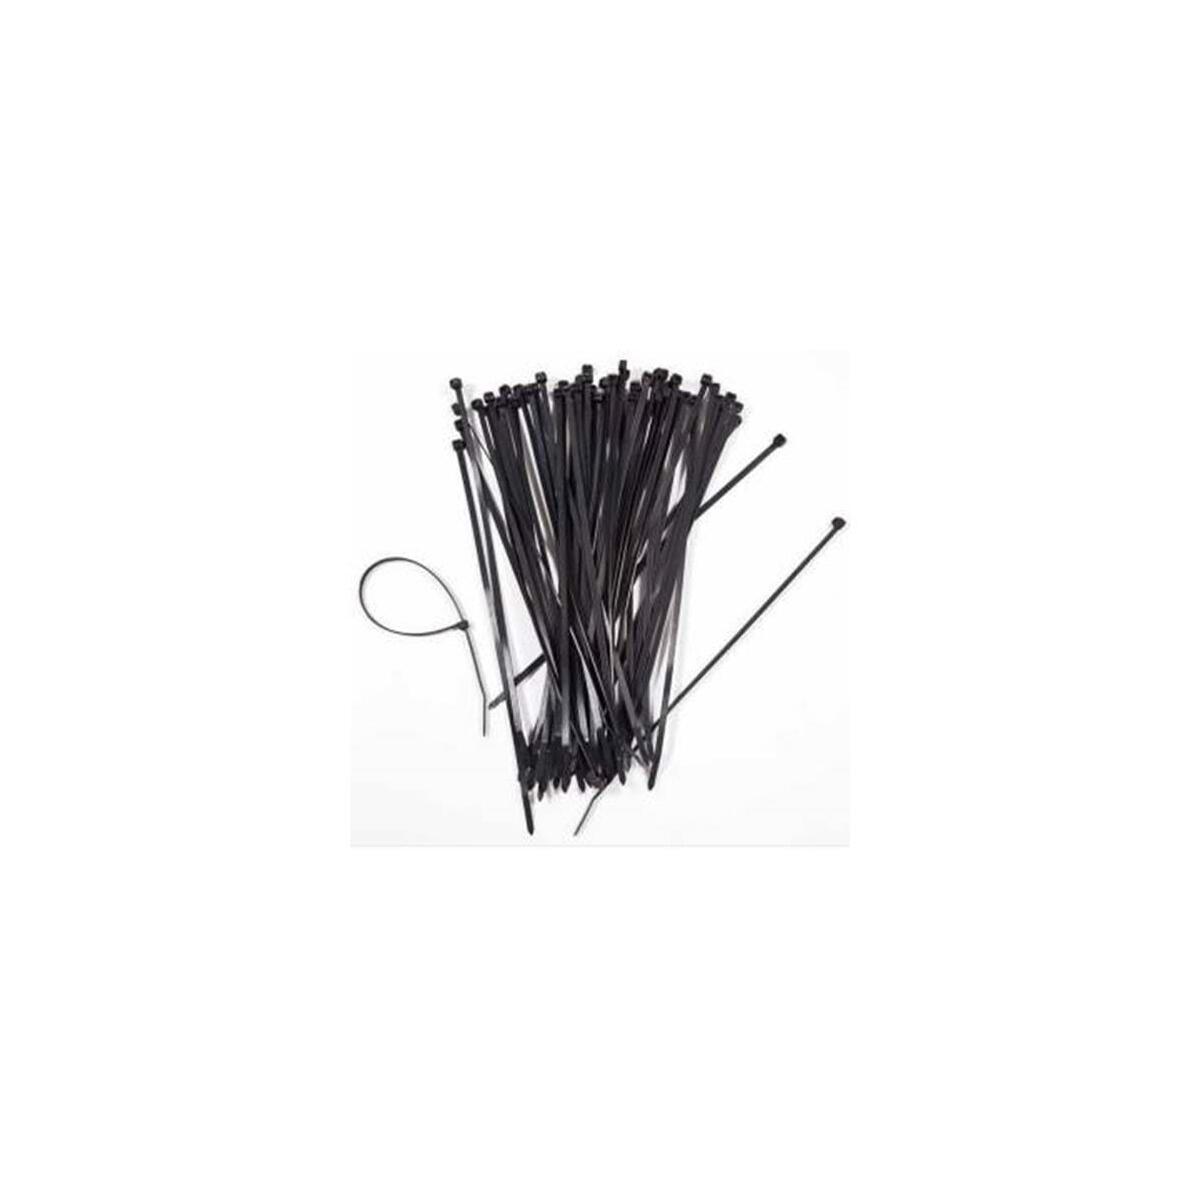 Skm Plastik Cırt Kelepçe 20 Cm (100 Ad) Siyah